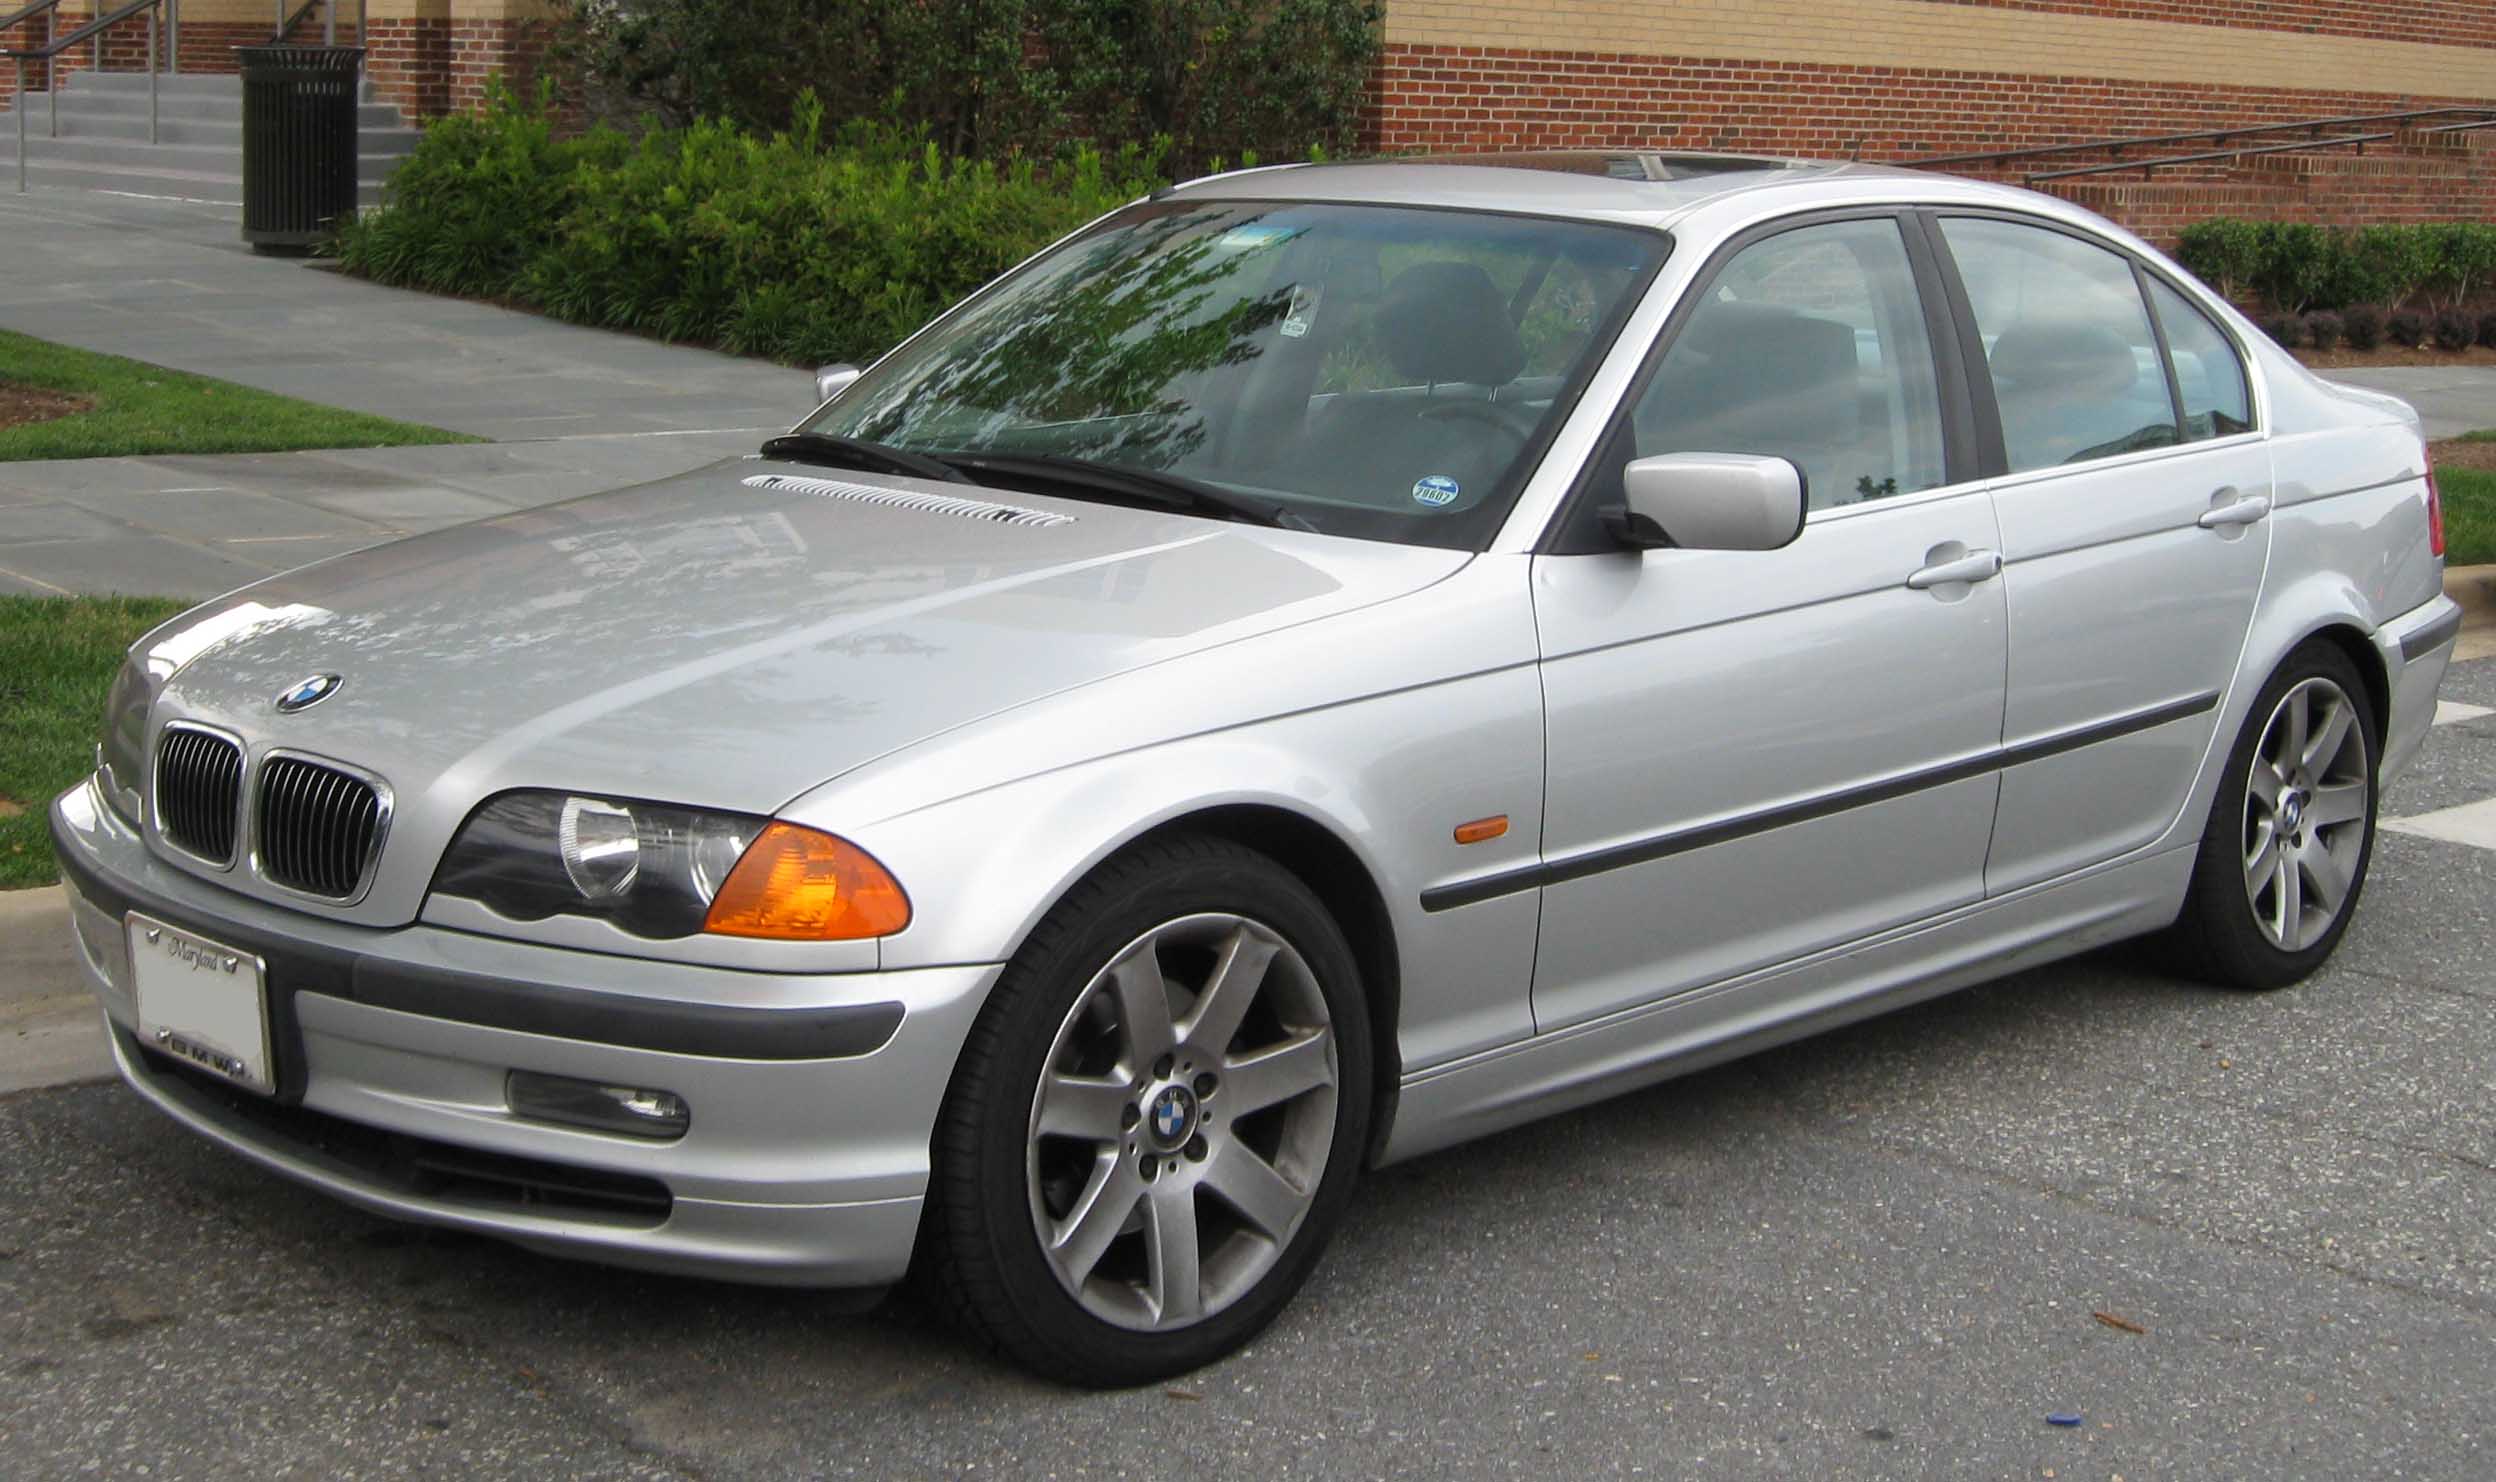 File:1998-2001 BMW 328i sedan.jpg - Wikimedia Commons